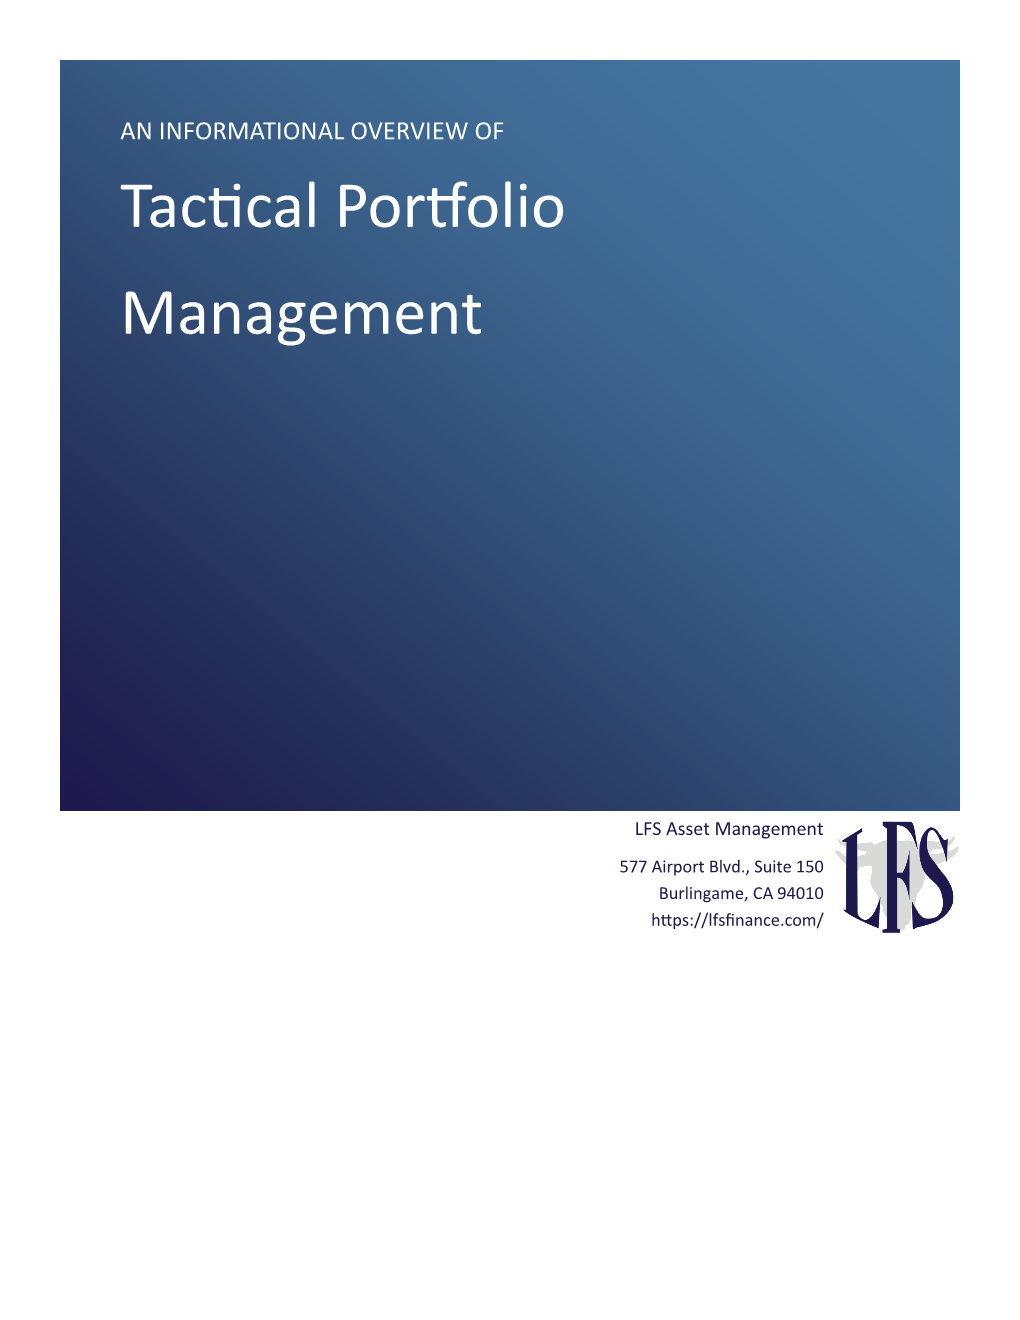 Tactical Portfolio Management